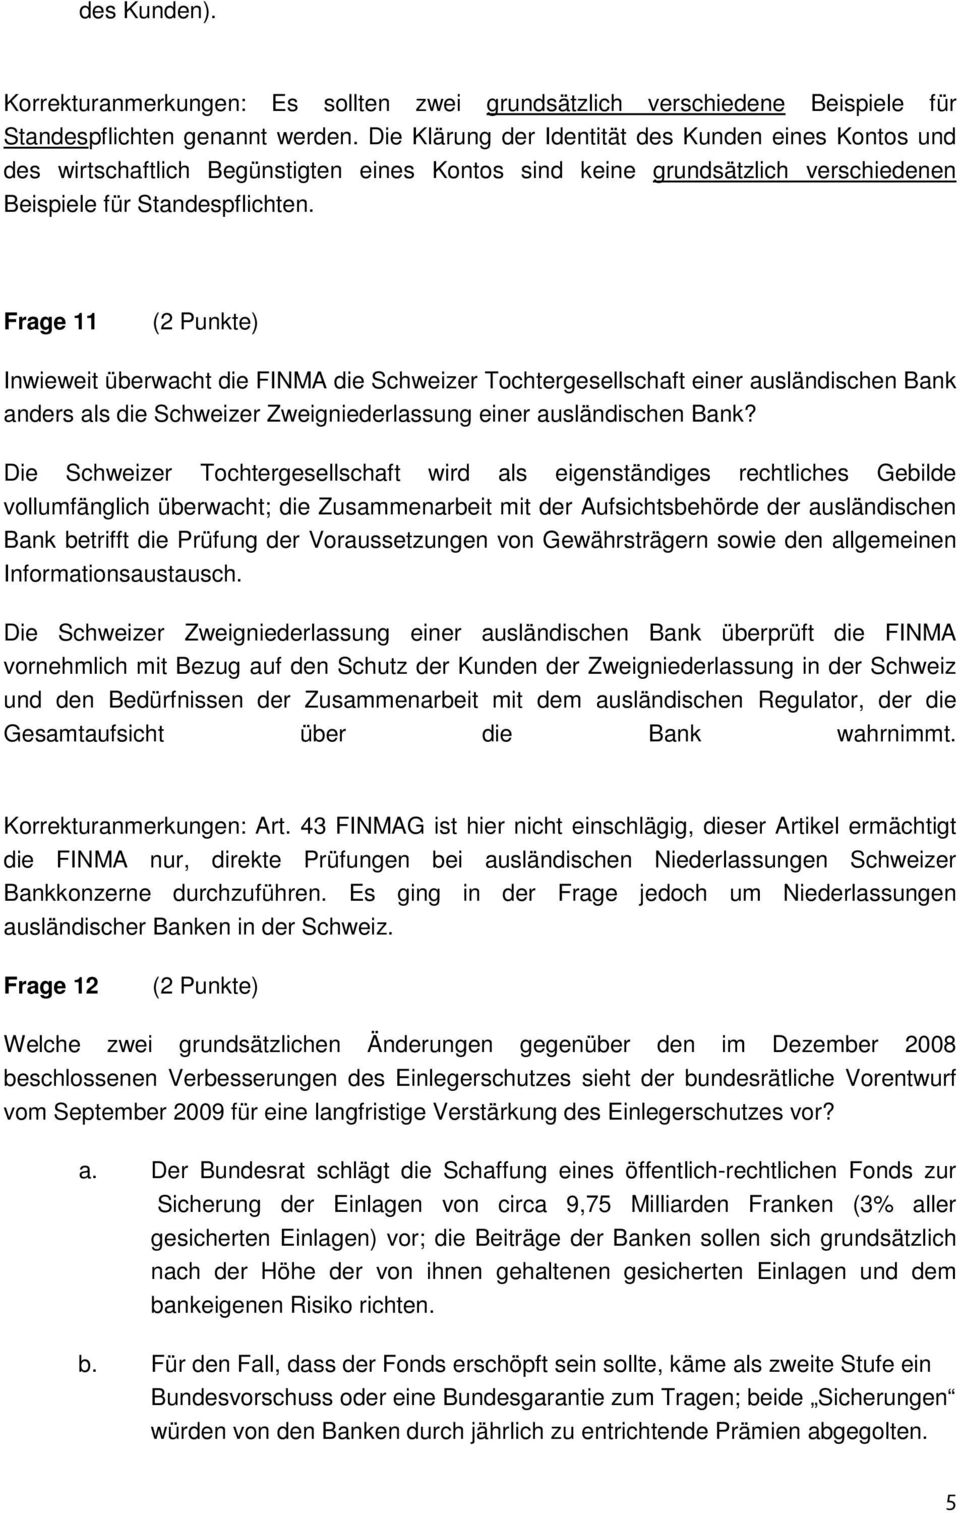 Frage 11 Inwieweit überwacht die FINMA die Schweizer Tochtergesellschaft einer ausländischen Bank anders als die Schweizer Zweigniederlassung einer ausländischen Bank?